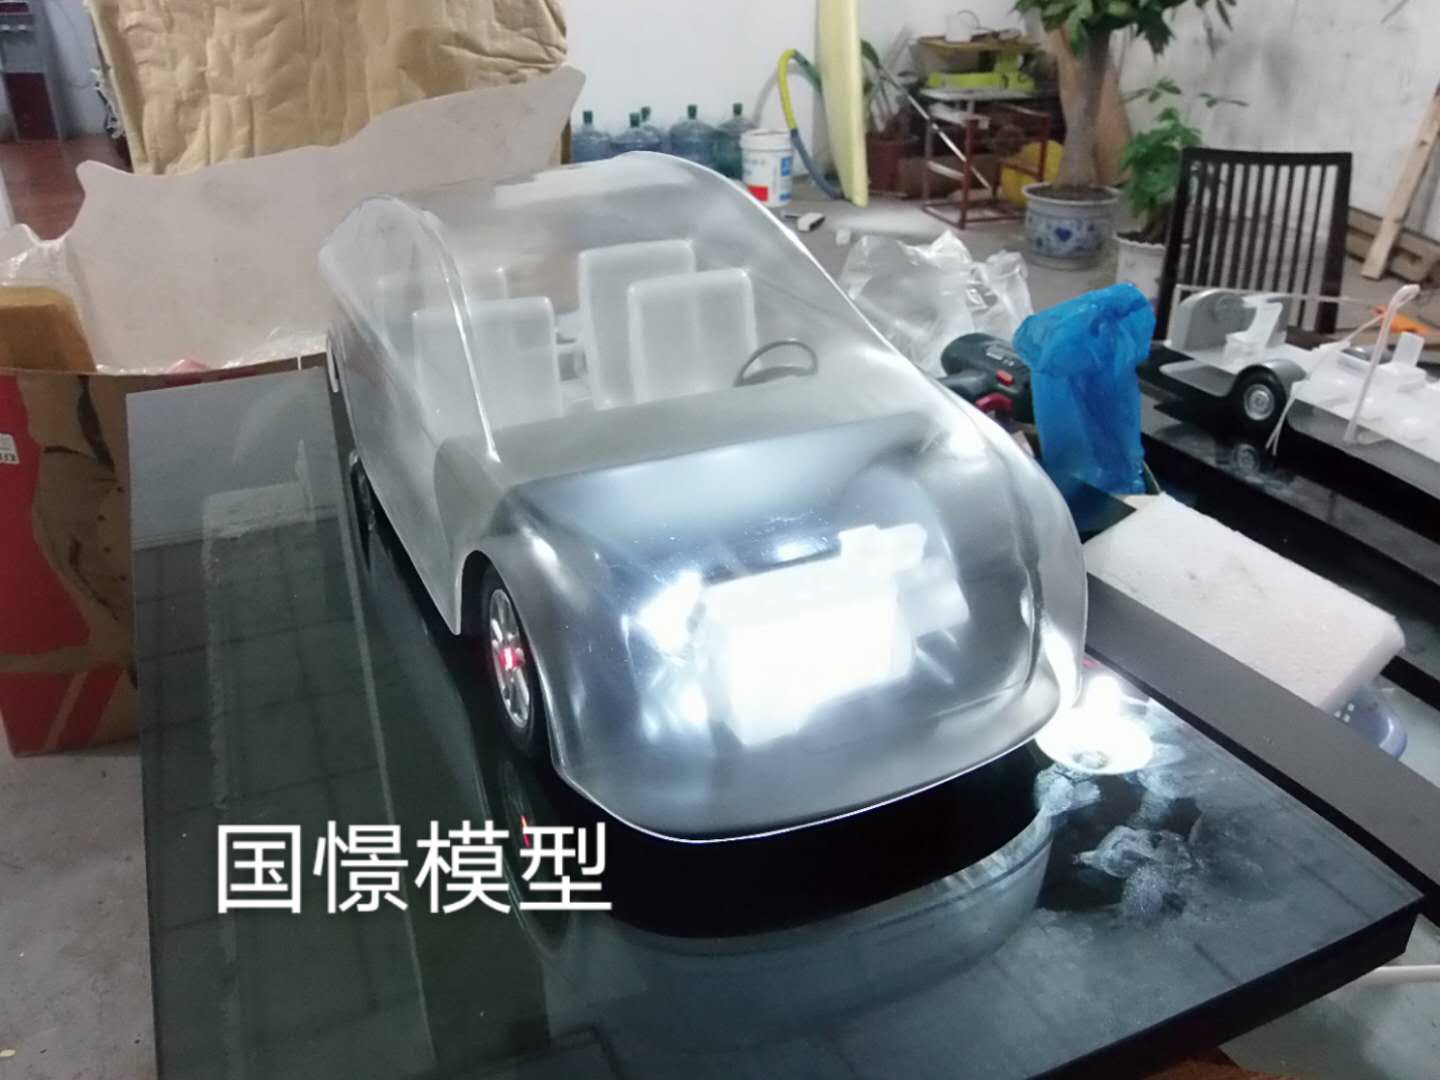 巴青县透明车模型